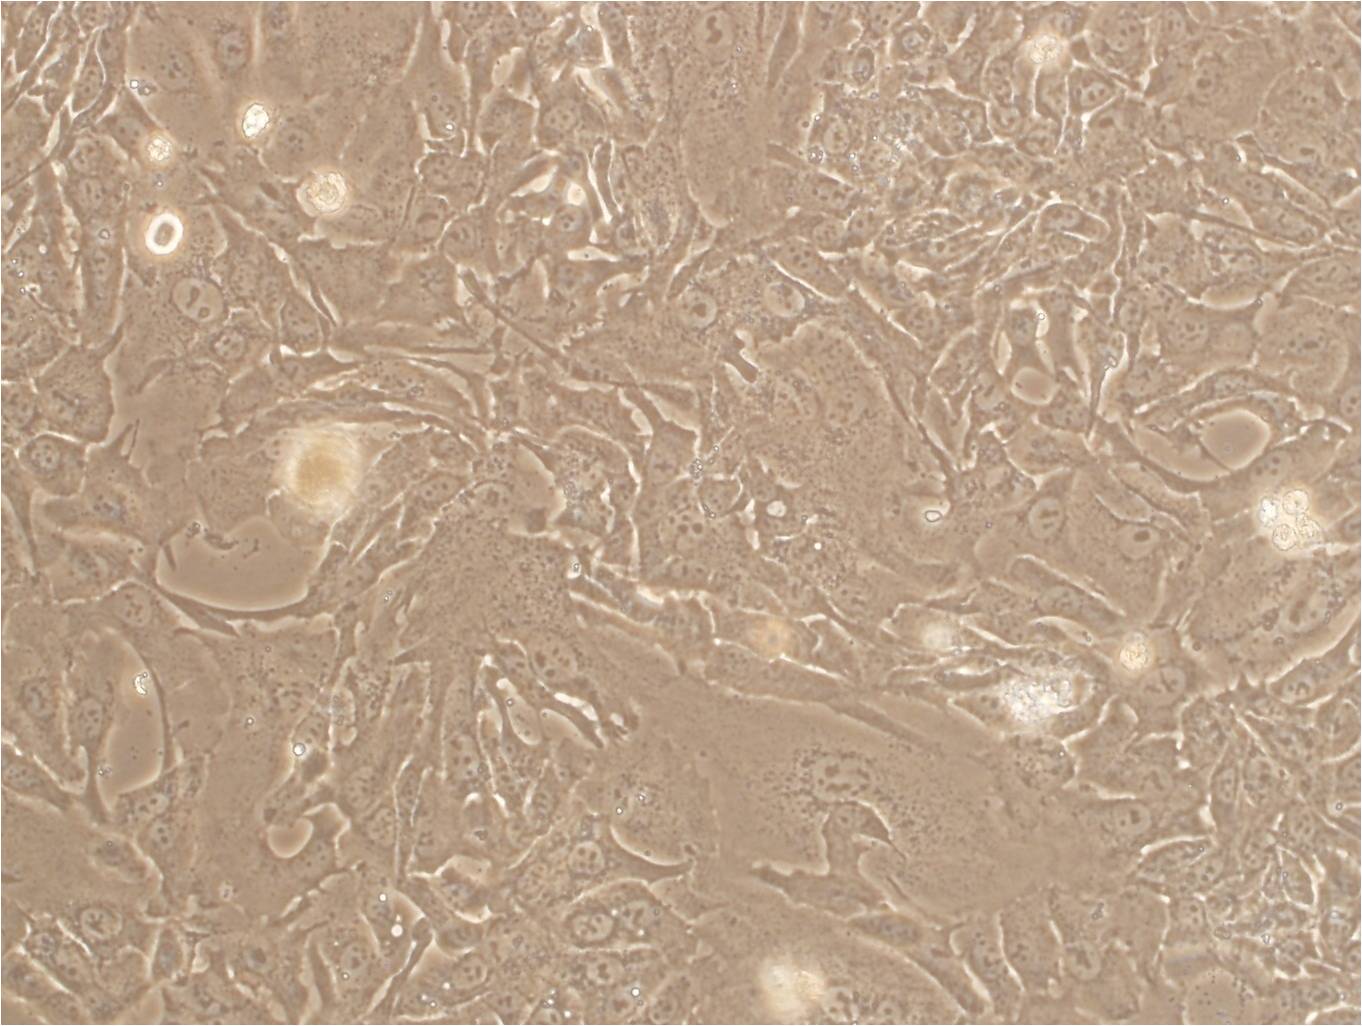 SK-NEP-1 epithelioid cells人肾母细胞瘤细胞系